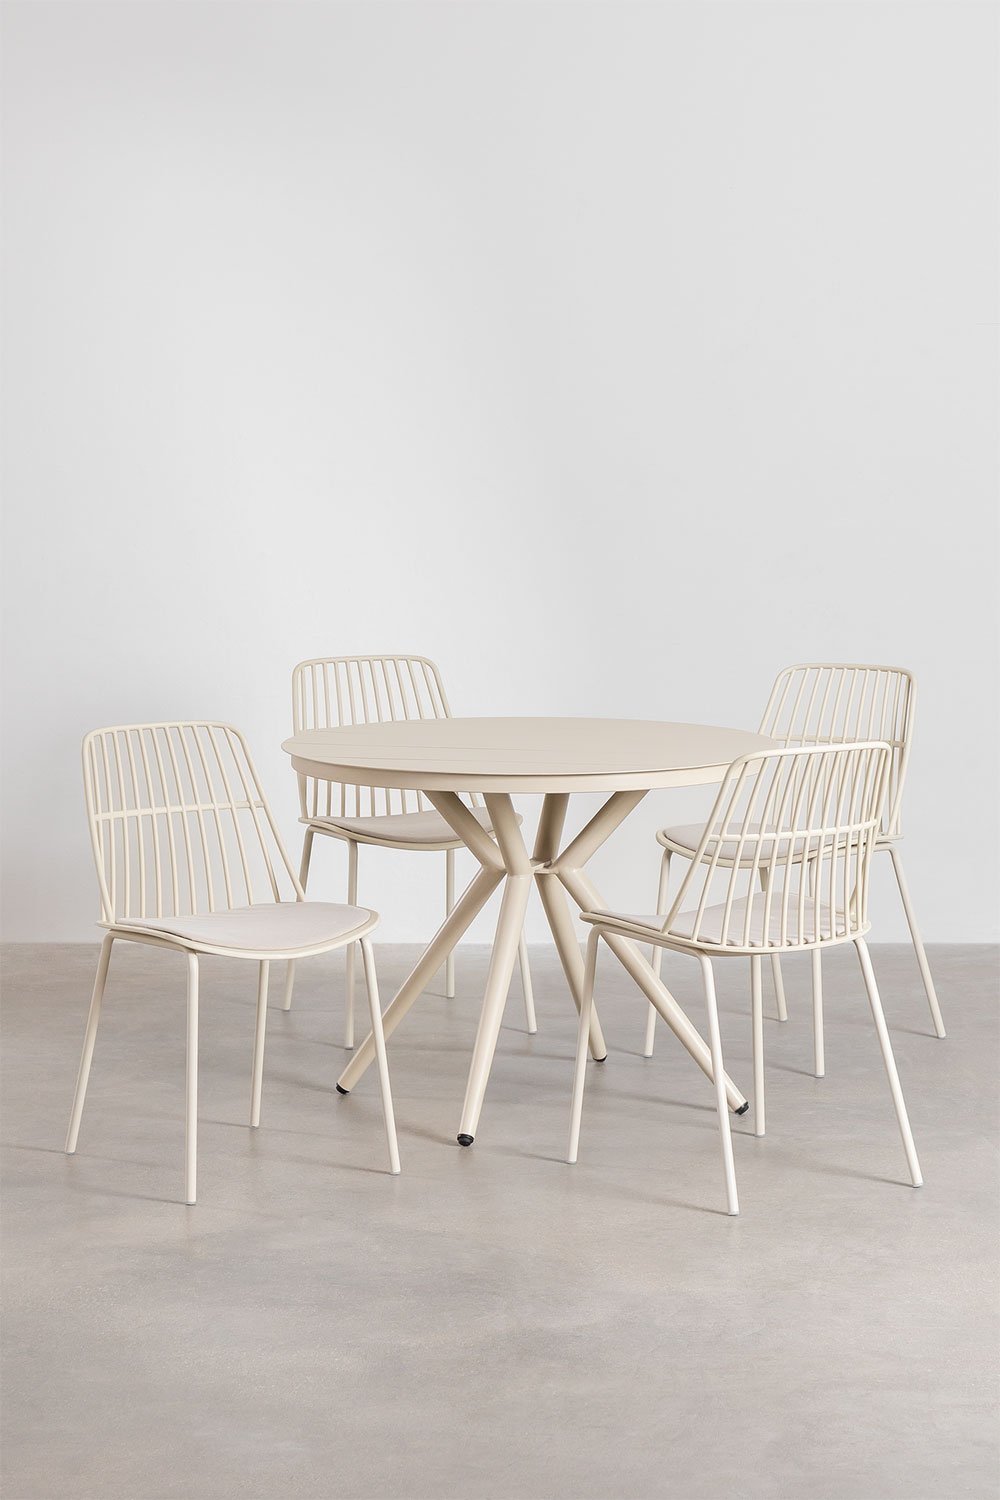 Zestaw okrągłego stołu aluminiowego (ø100 cm) Valerie i 4 krzesła ogrodowe Maeba, obrazek w galerii 1